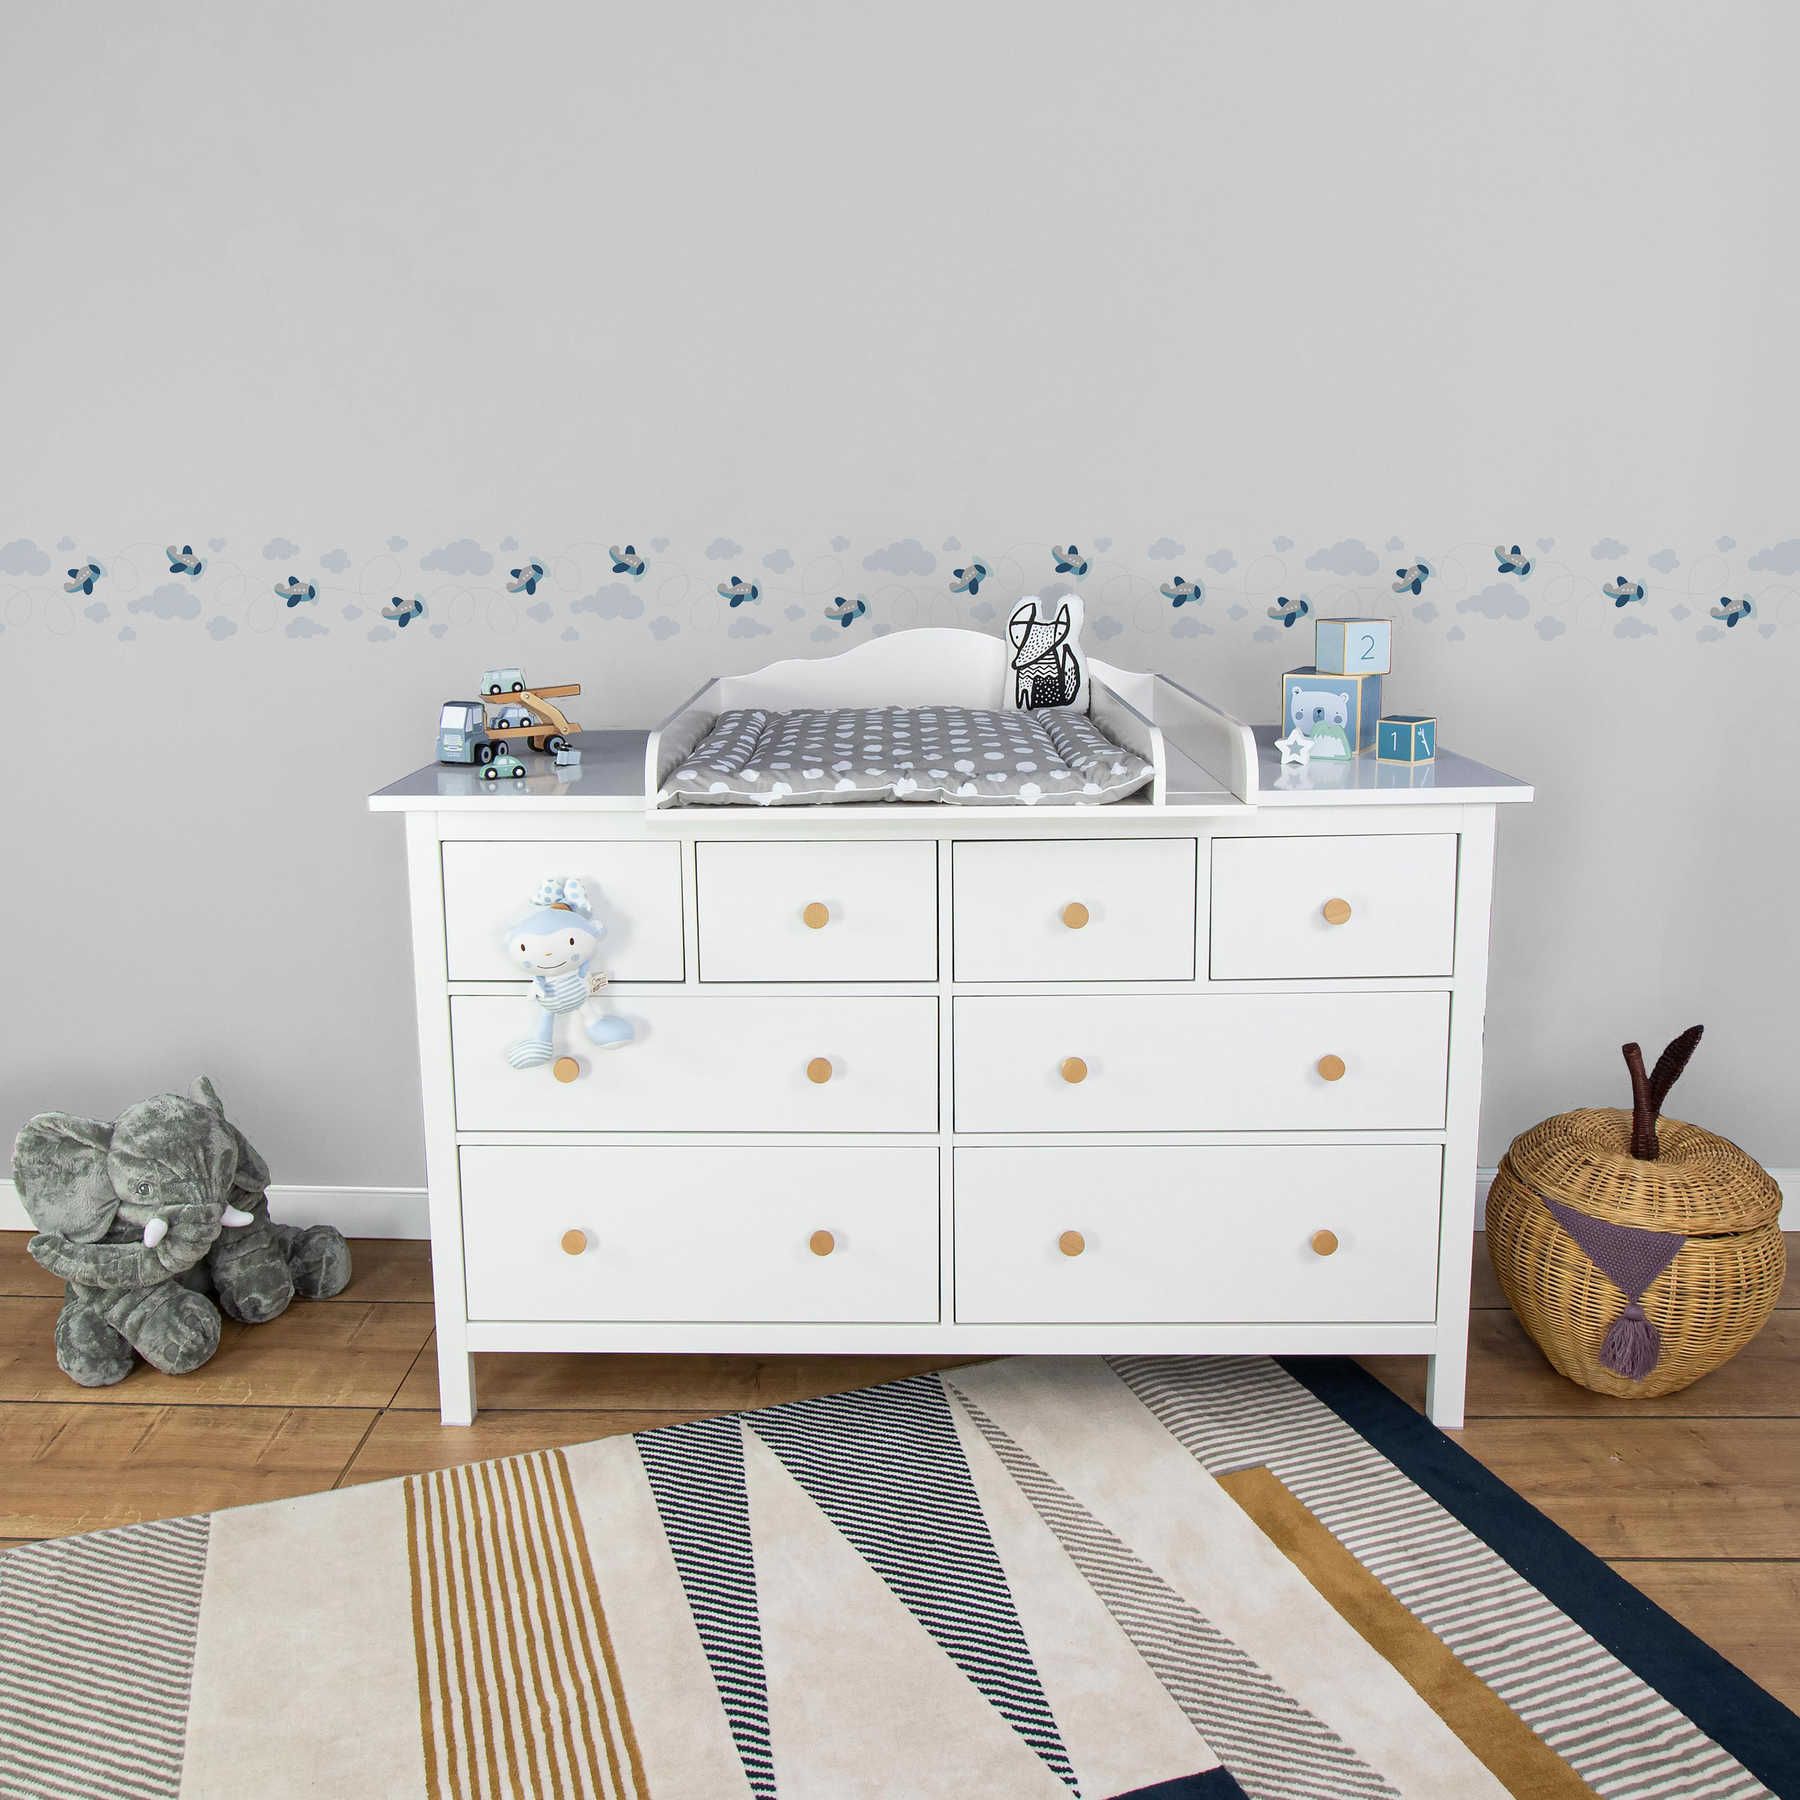             Breezy Outlook Frontera de la habitación del bebé para los niños - azul, gris, blanco
        